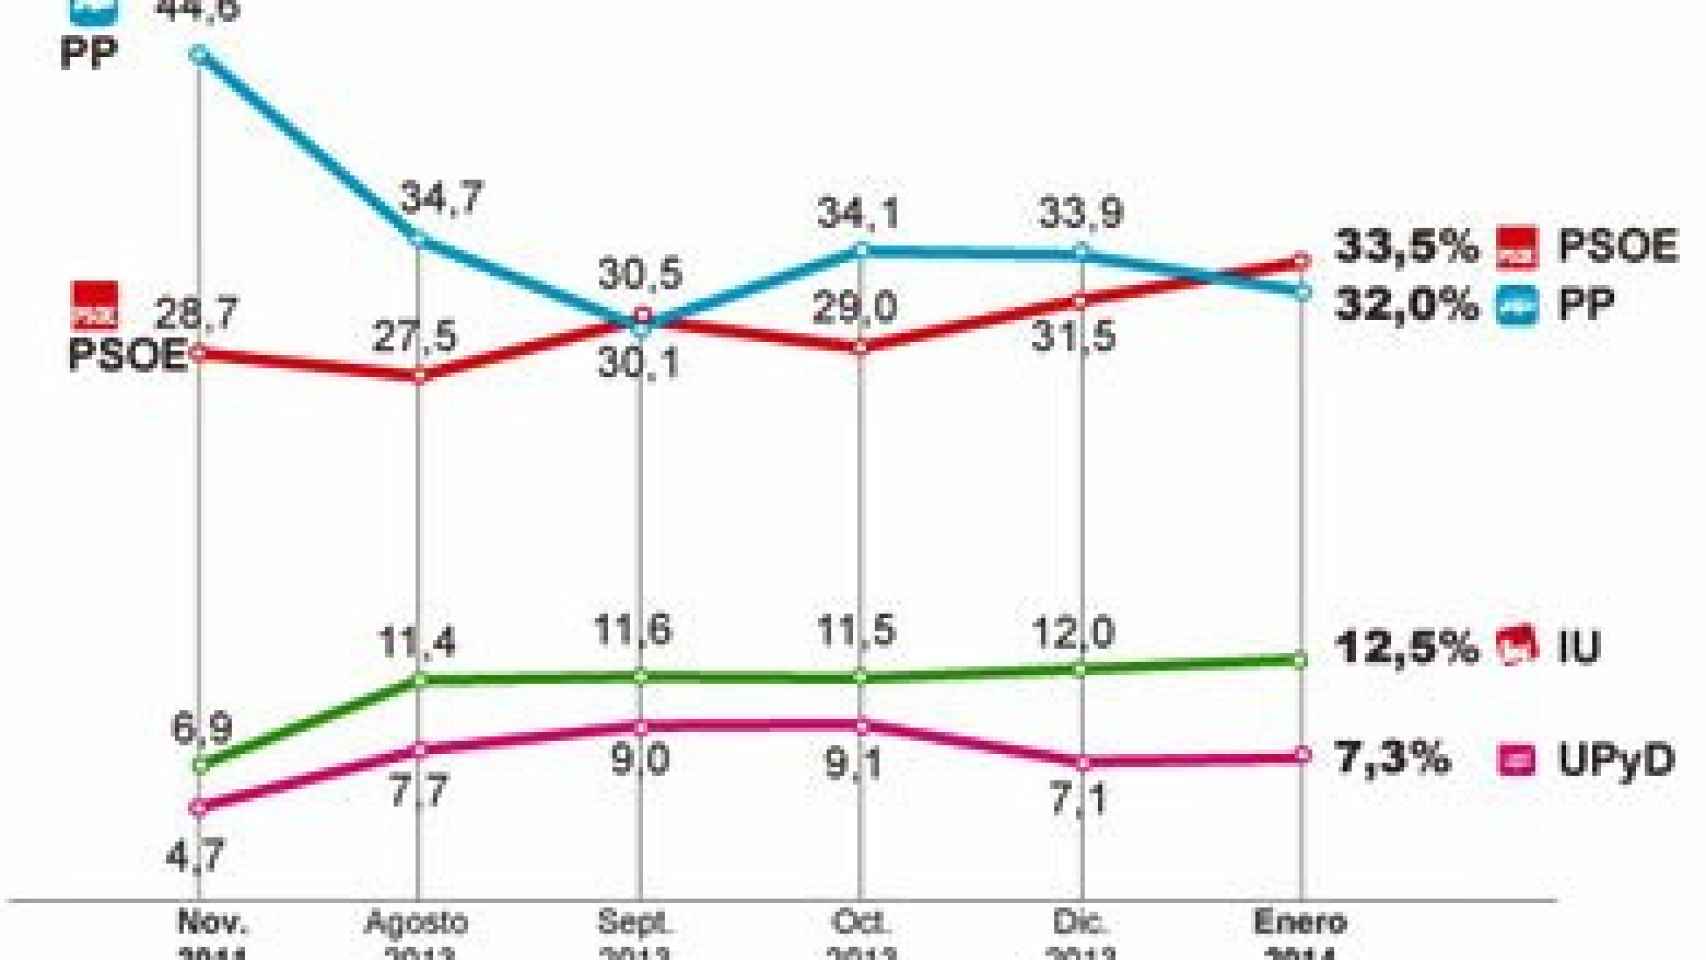 Evolución de la intención de voto en las encuestas encargadas por 'El País'